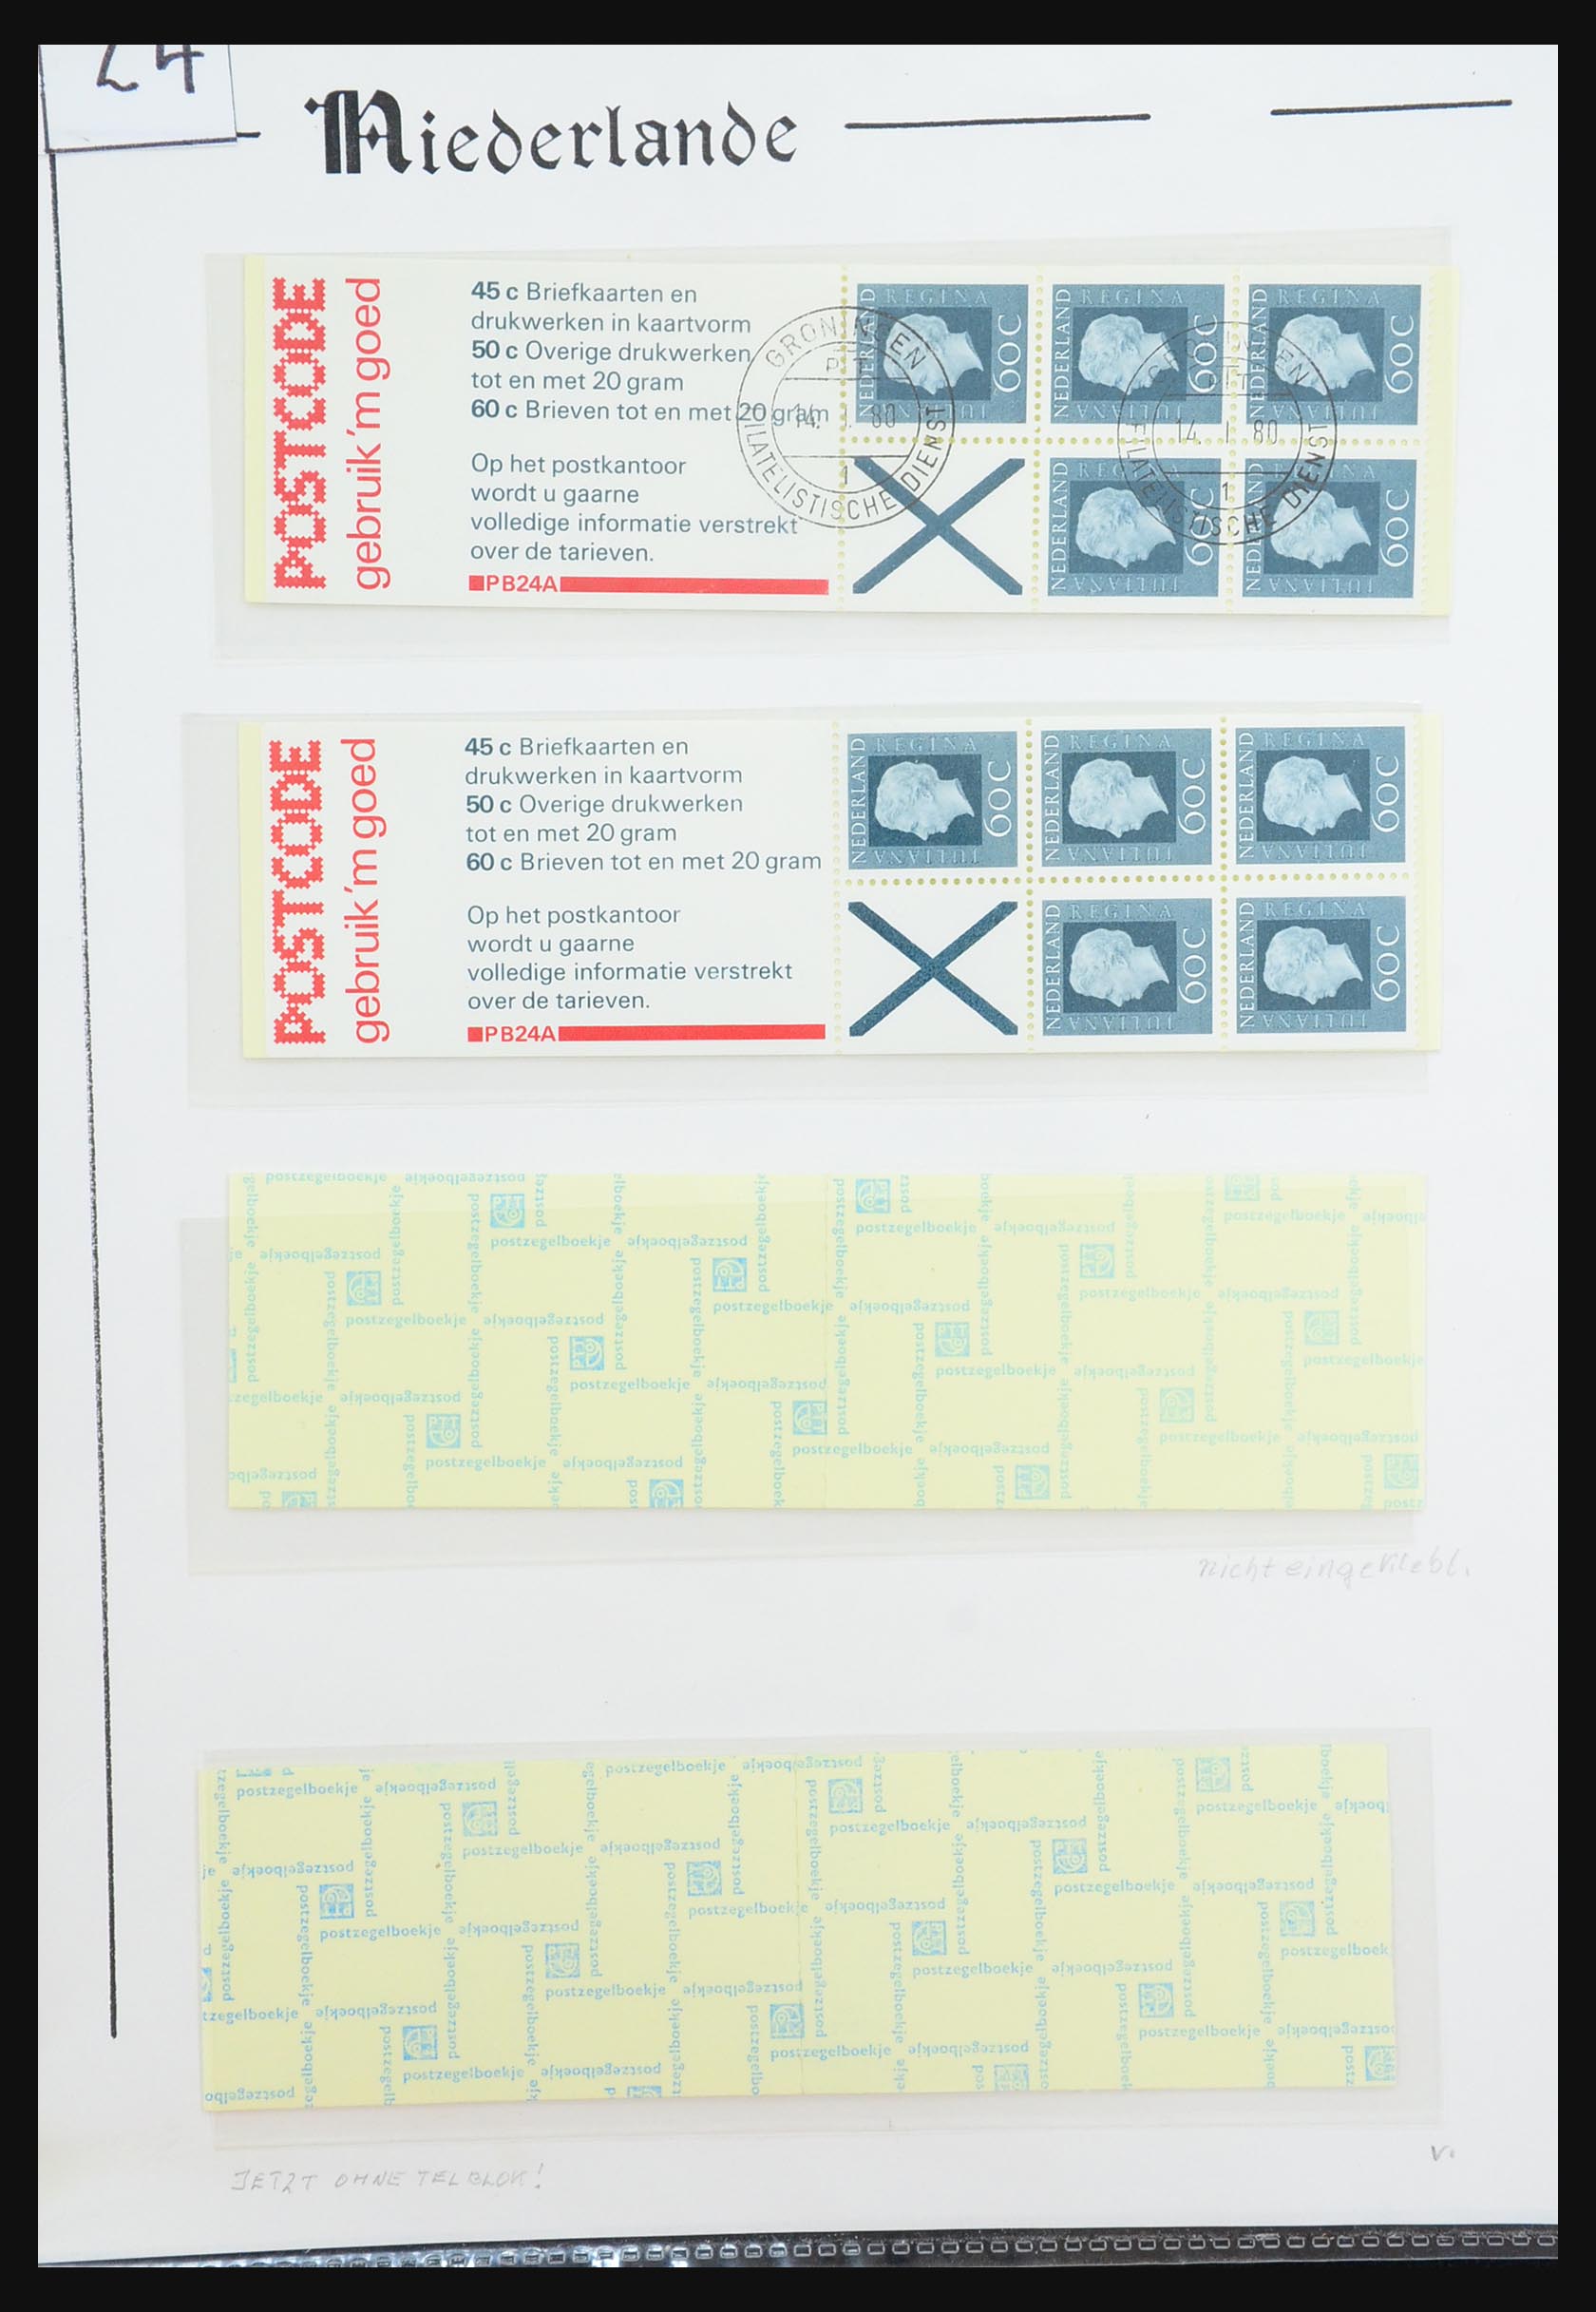 31311 077 - 31311 Netherlands stamp booklets 1964-1994.